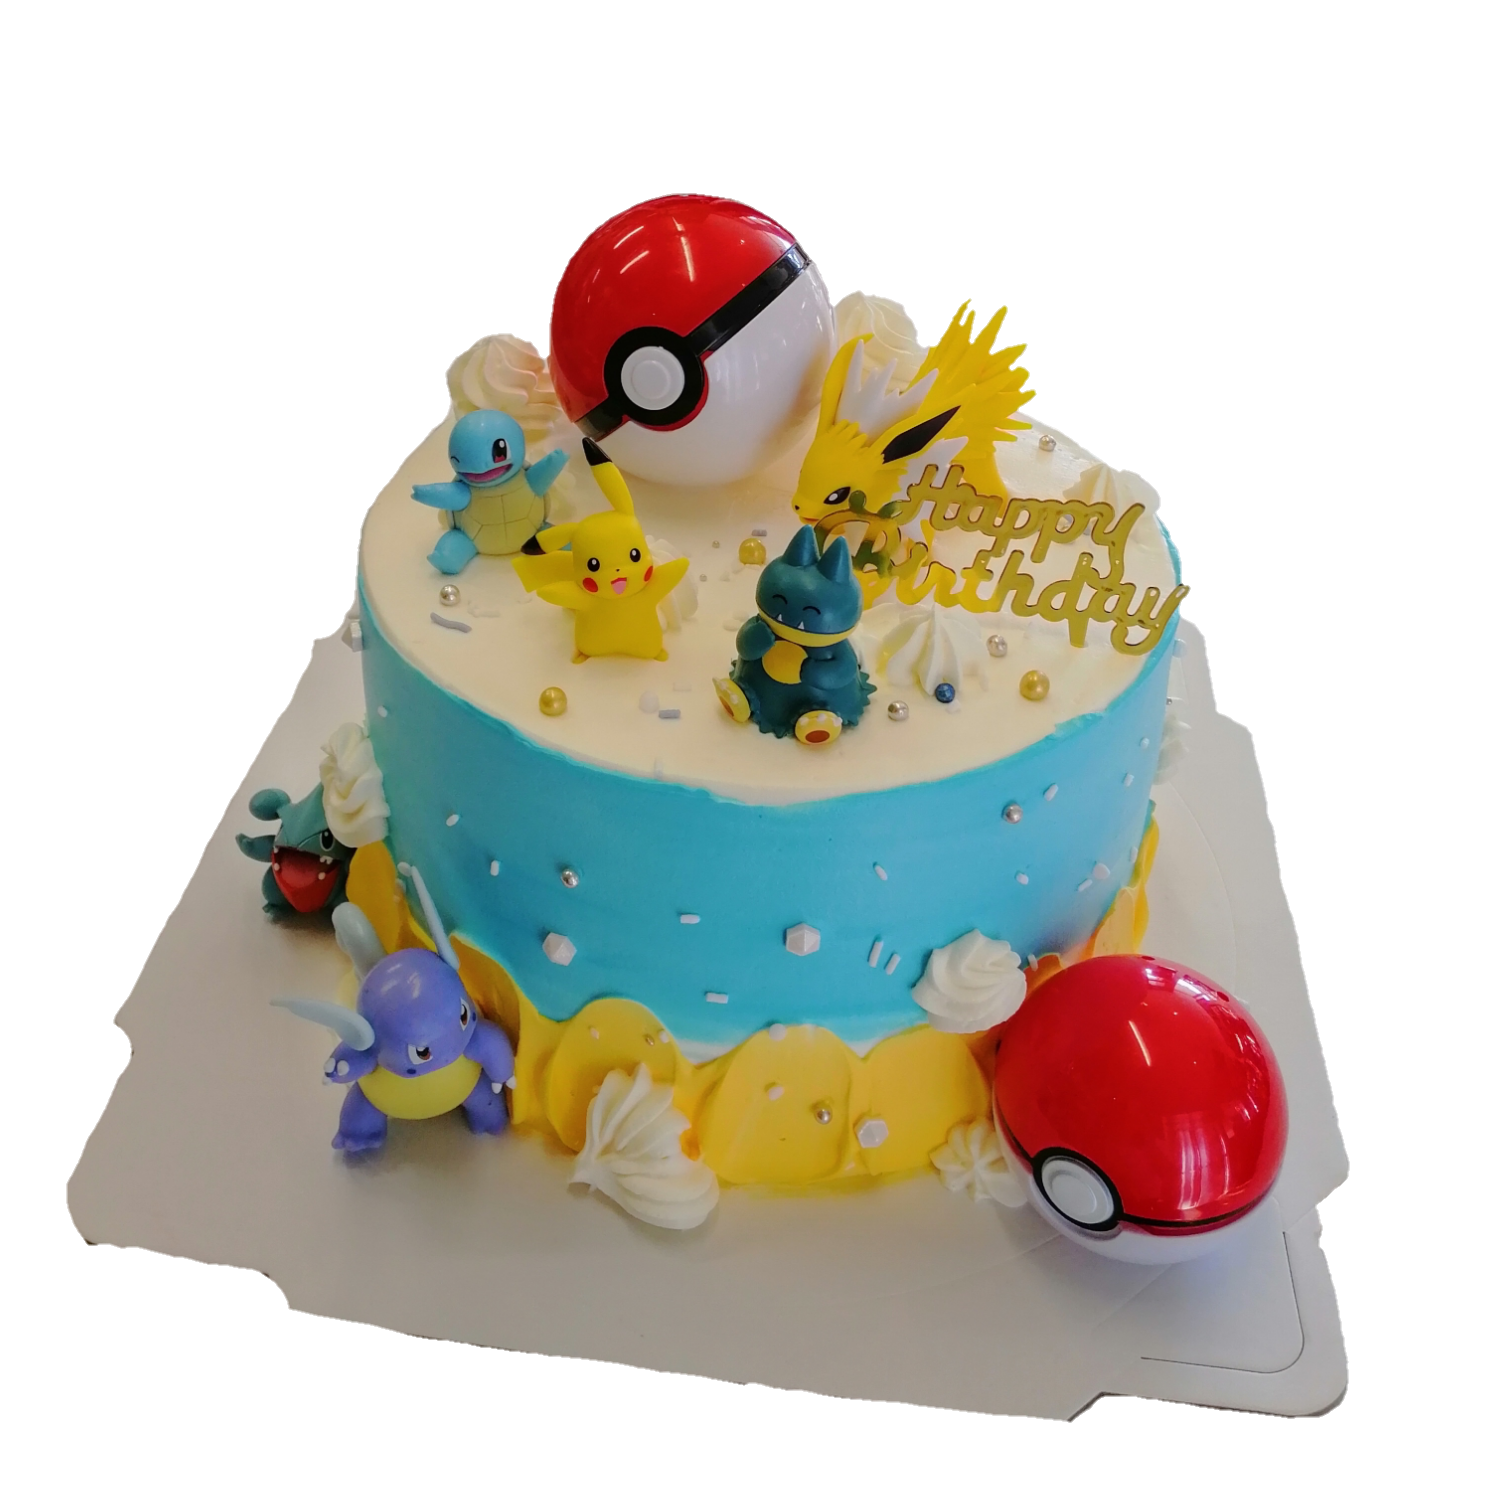 Pokemon Themed Cake - Decorated Cake by Bakelicious18 - CakesDecor